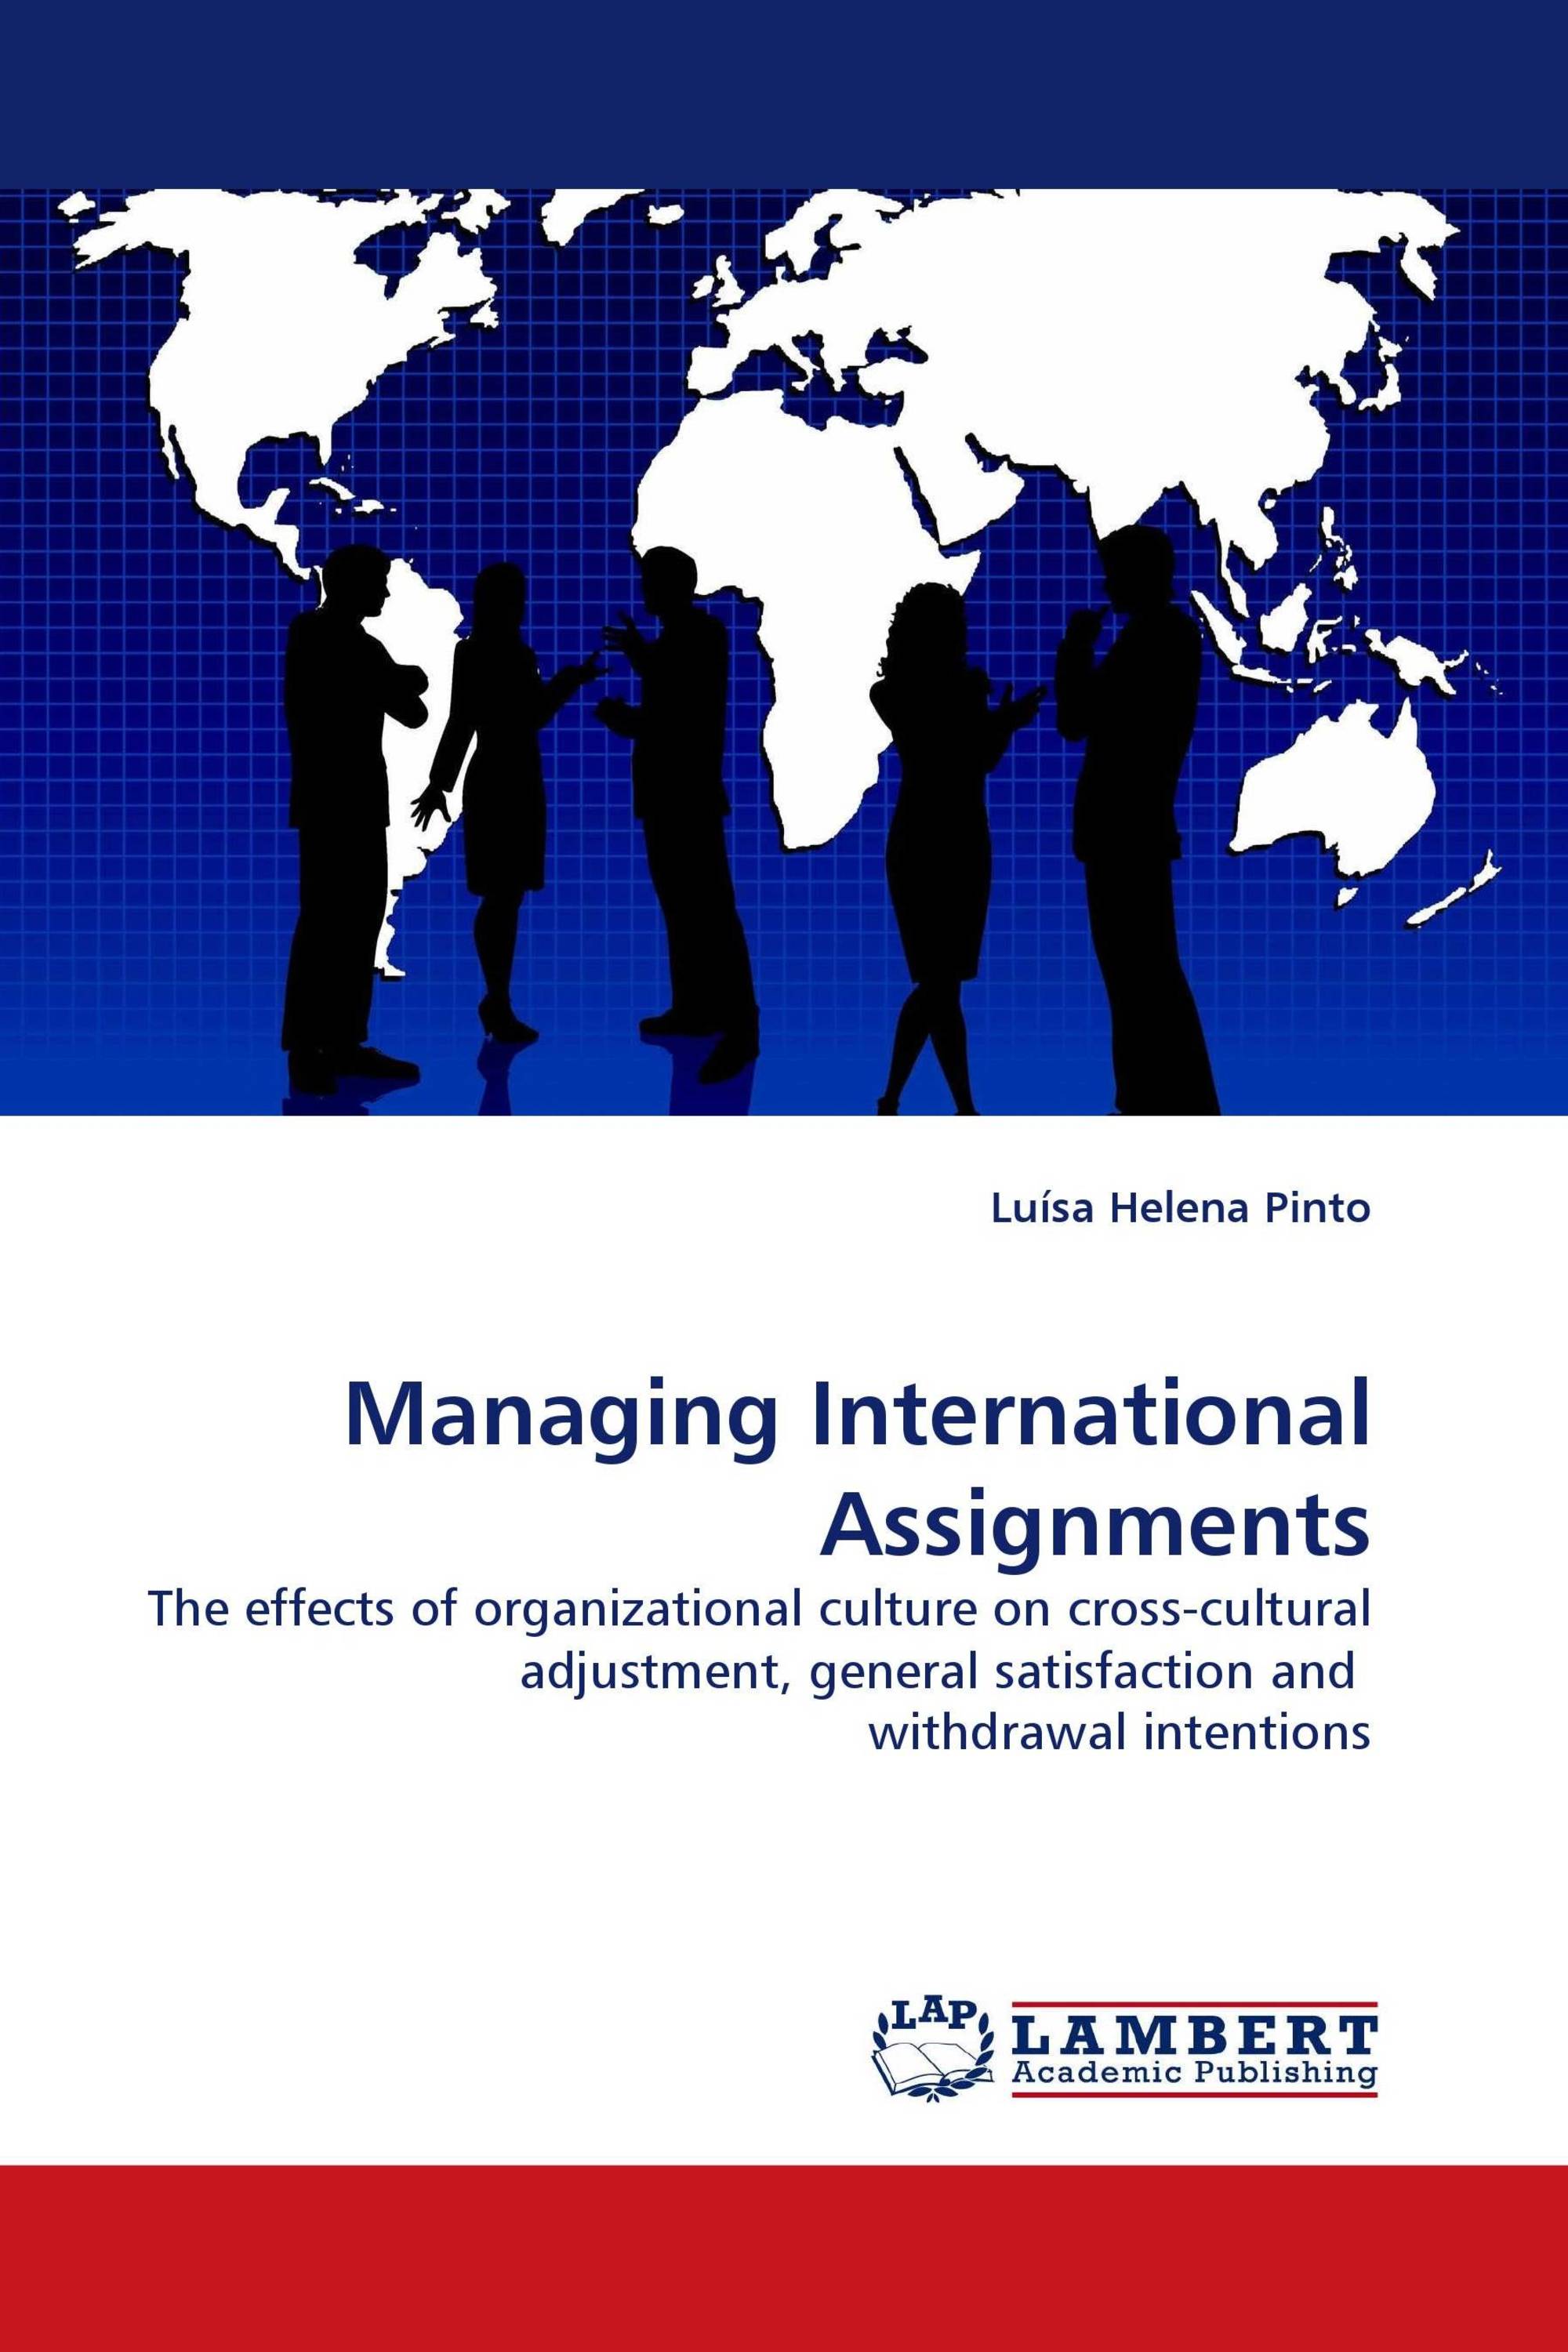 international assignments talent management